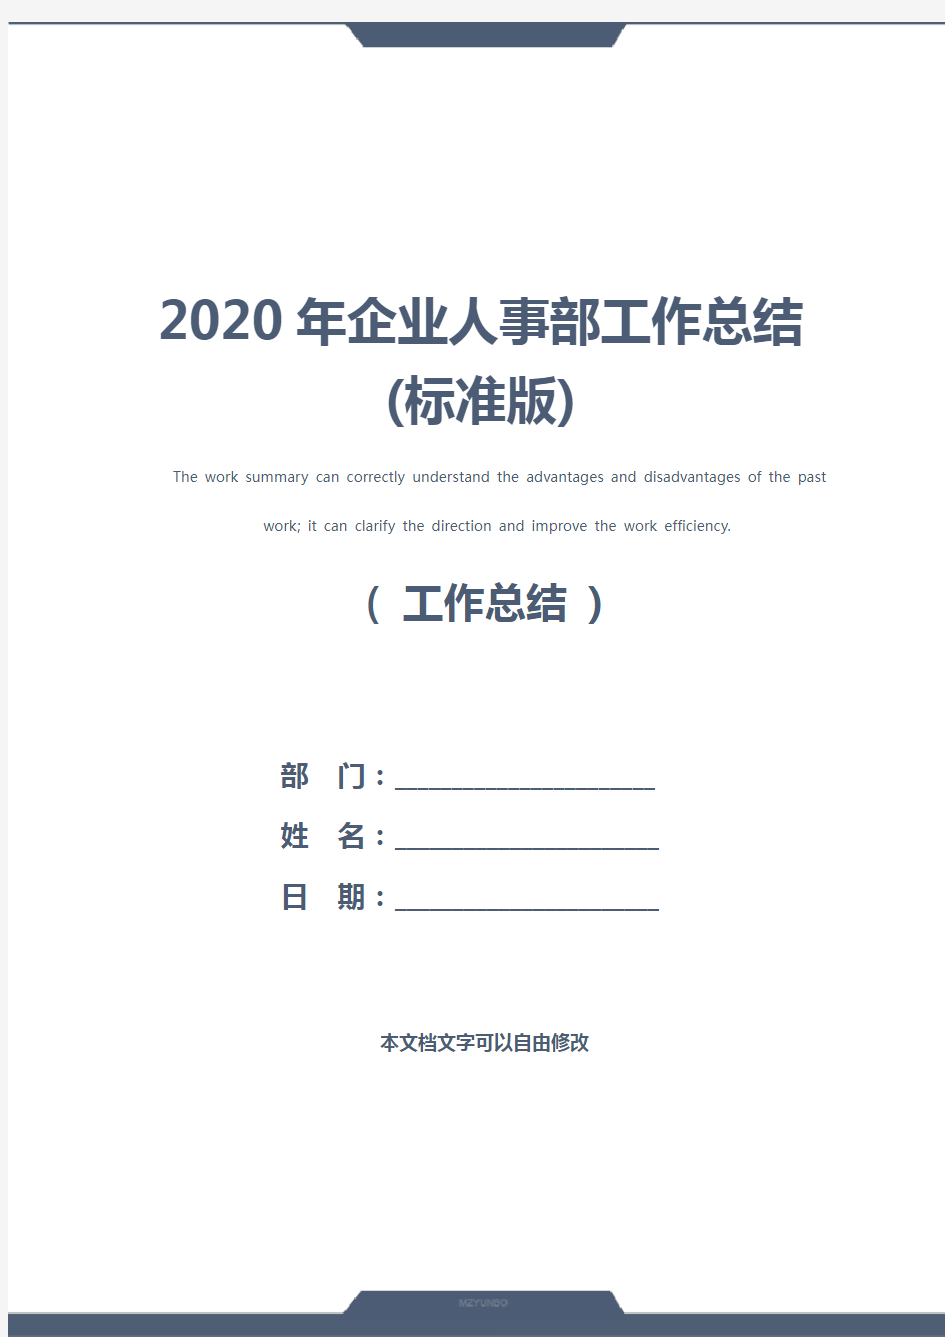 2020年企业人事部工作总结(标准版)